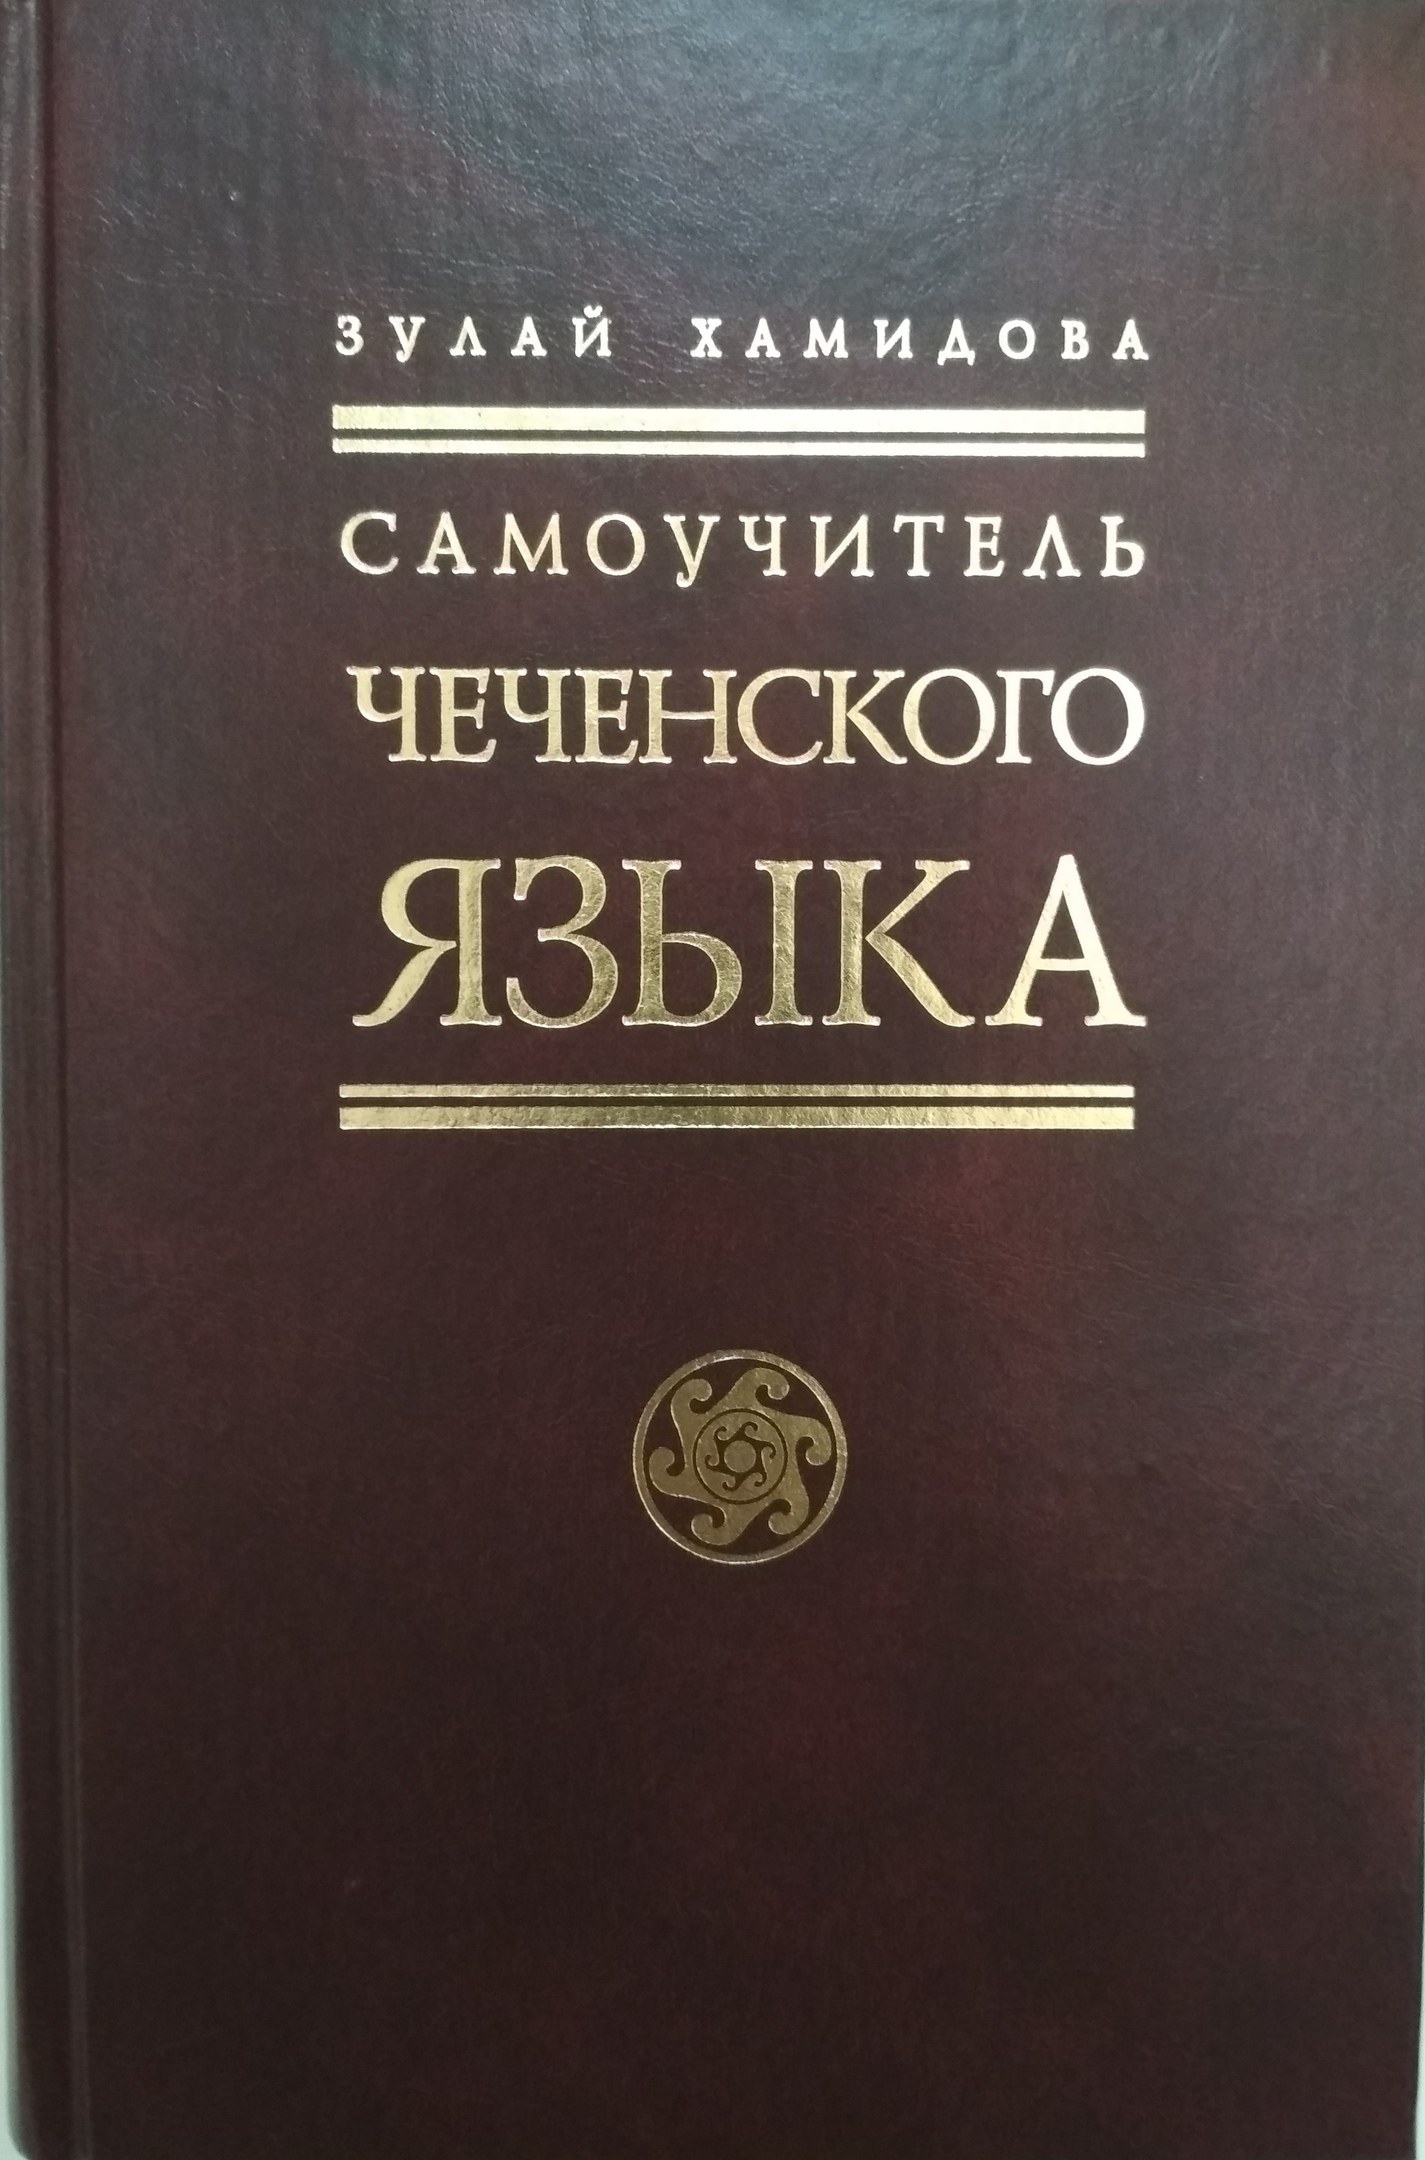 Сколько чеченских языков. Книги для изучения чеченского языка. Чеченский язык. Учебник чеченского языка. Книги на чеченском языке.